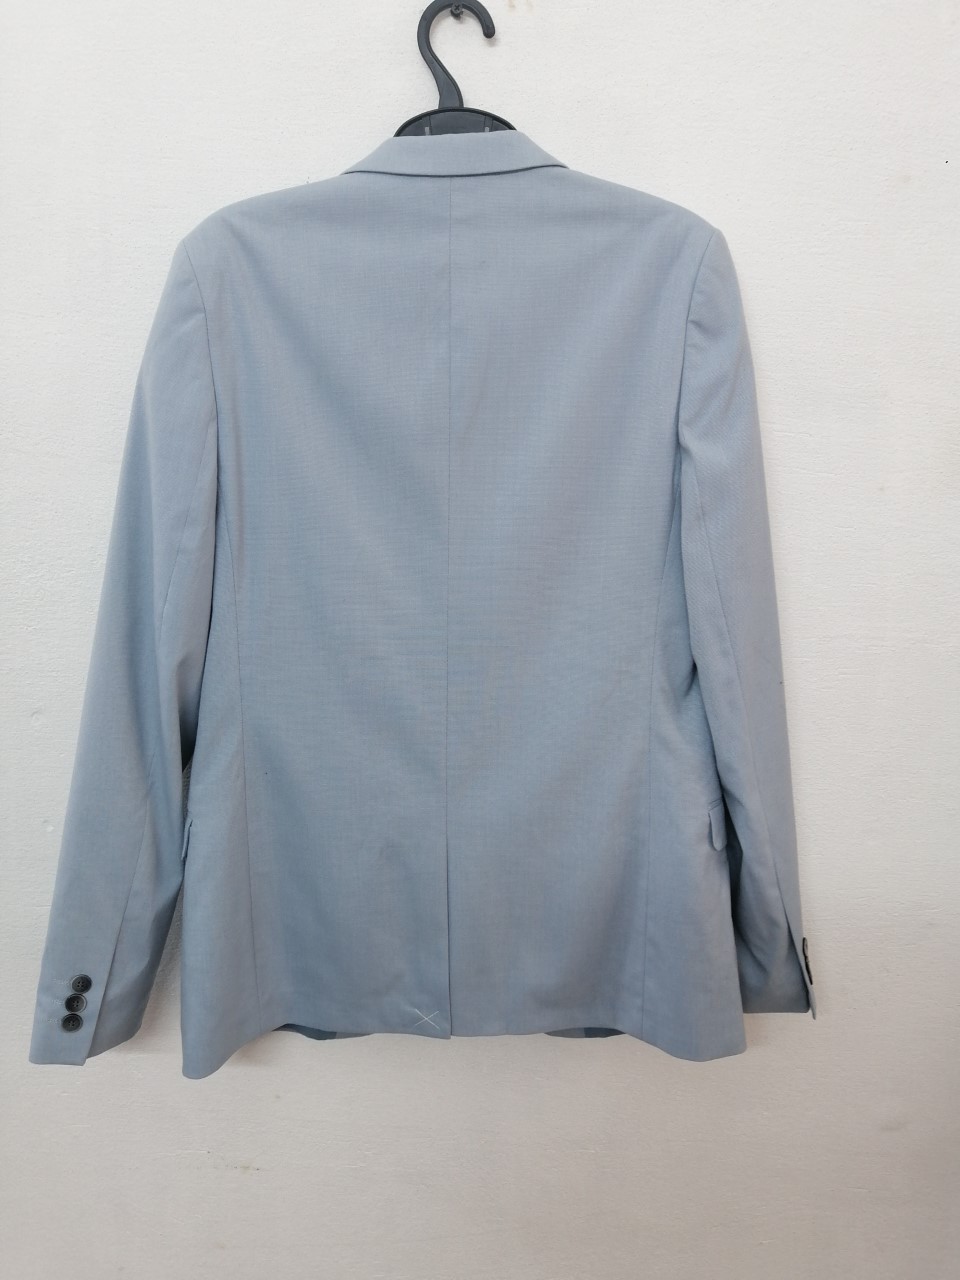 Mini Me Suit Jacket – Shoppe Pk a Project of YAS